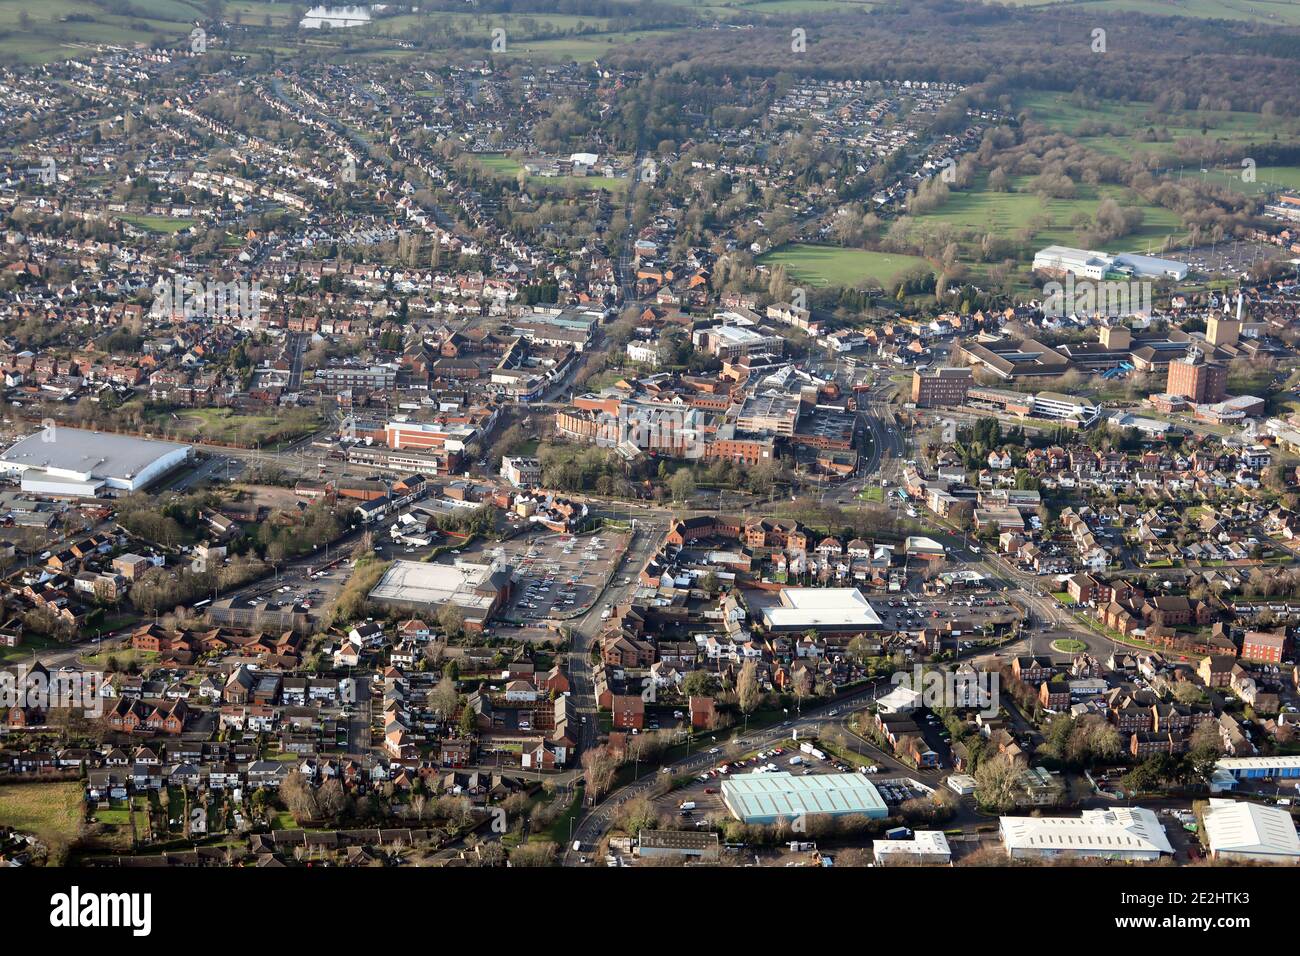 Vue aérienne du centre-ville de Cannock avec le supermarché Morrisons en avant-plan, et le centre commercial Cannock plus en arrière Staffordshire, Royaume-Uni Banque D'Images